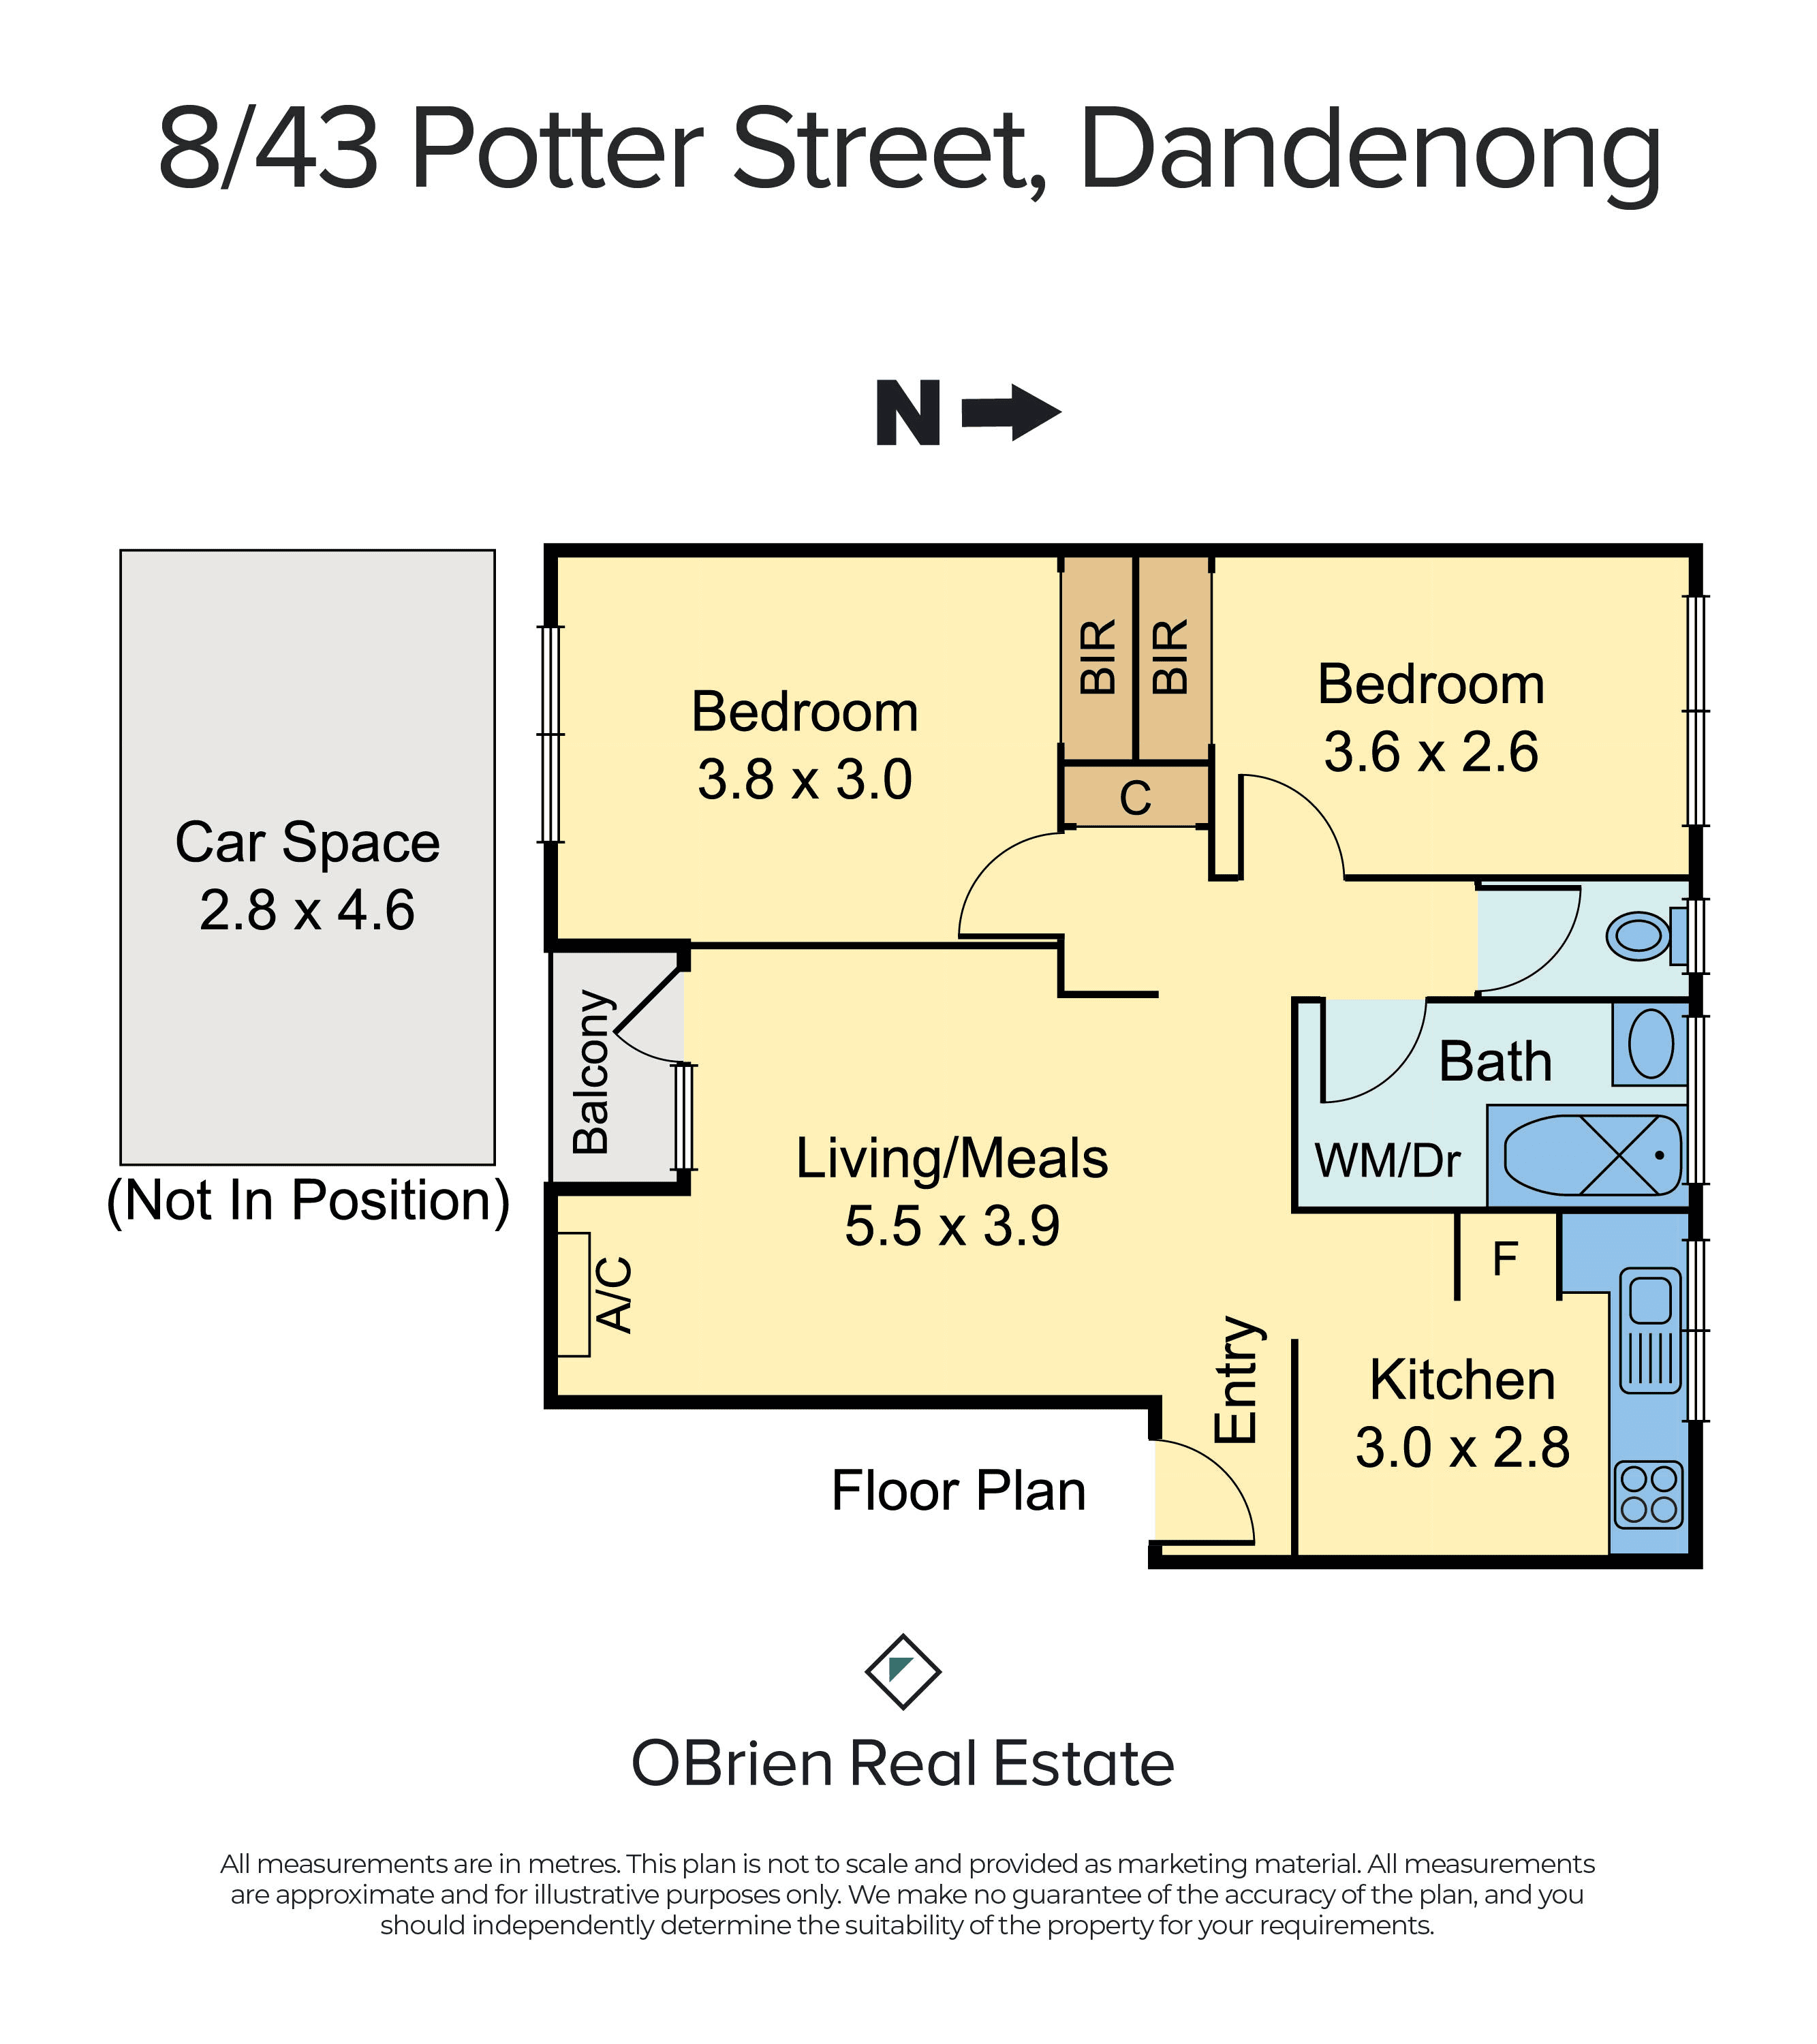 8/43 Potter Street, Dandenong, VIC 3175